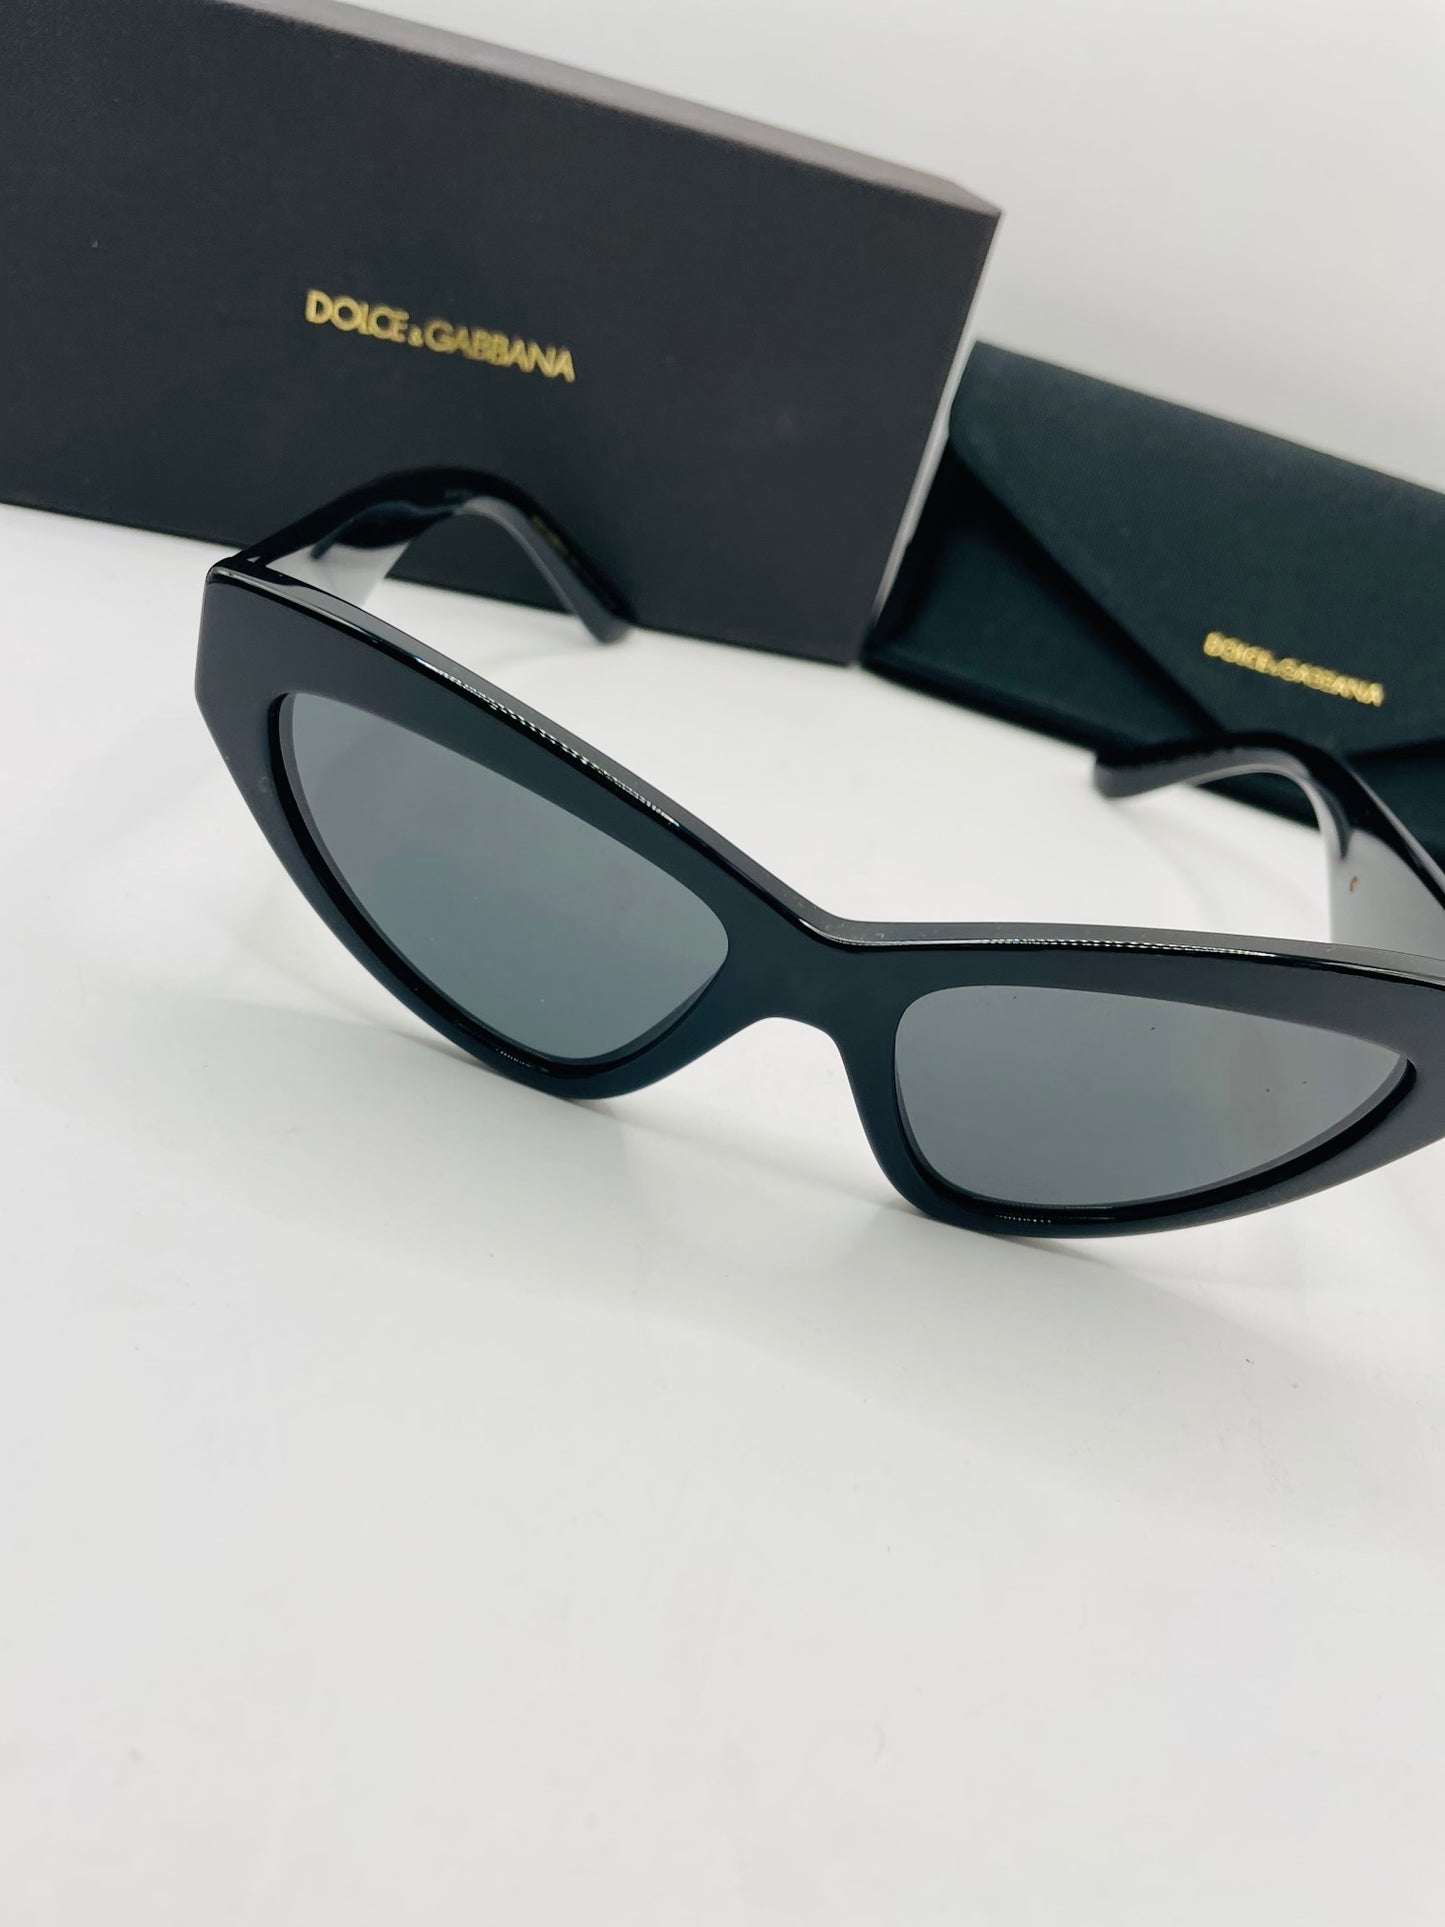 Dolce & Gabbana sunglass